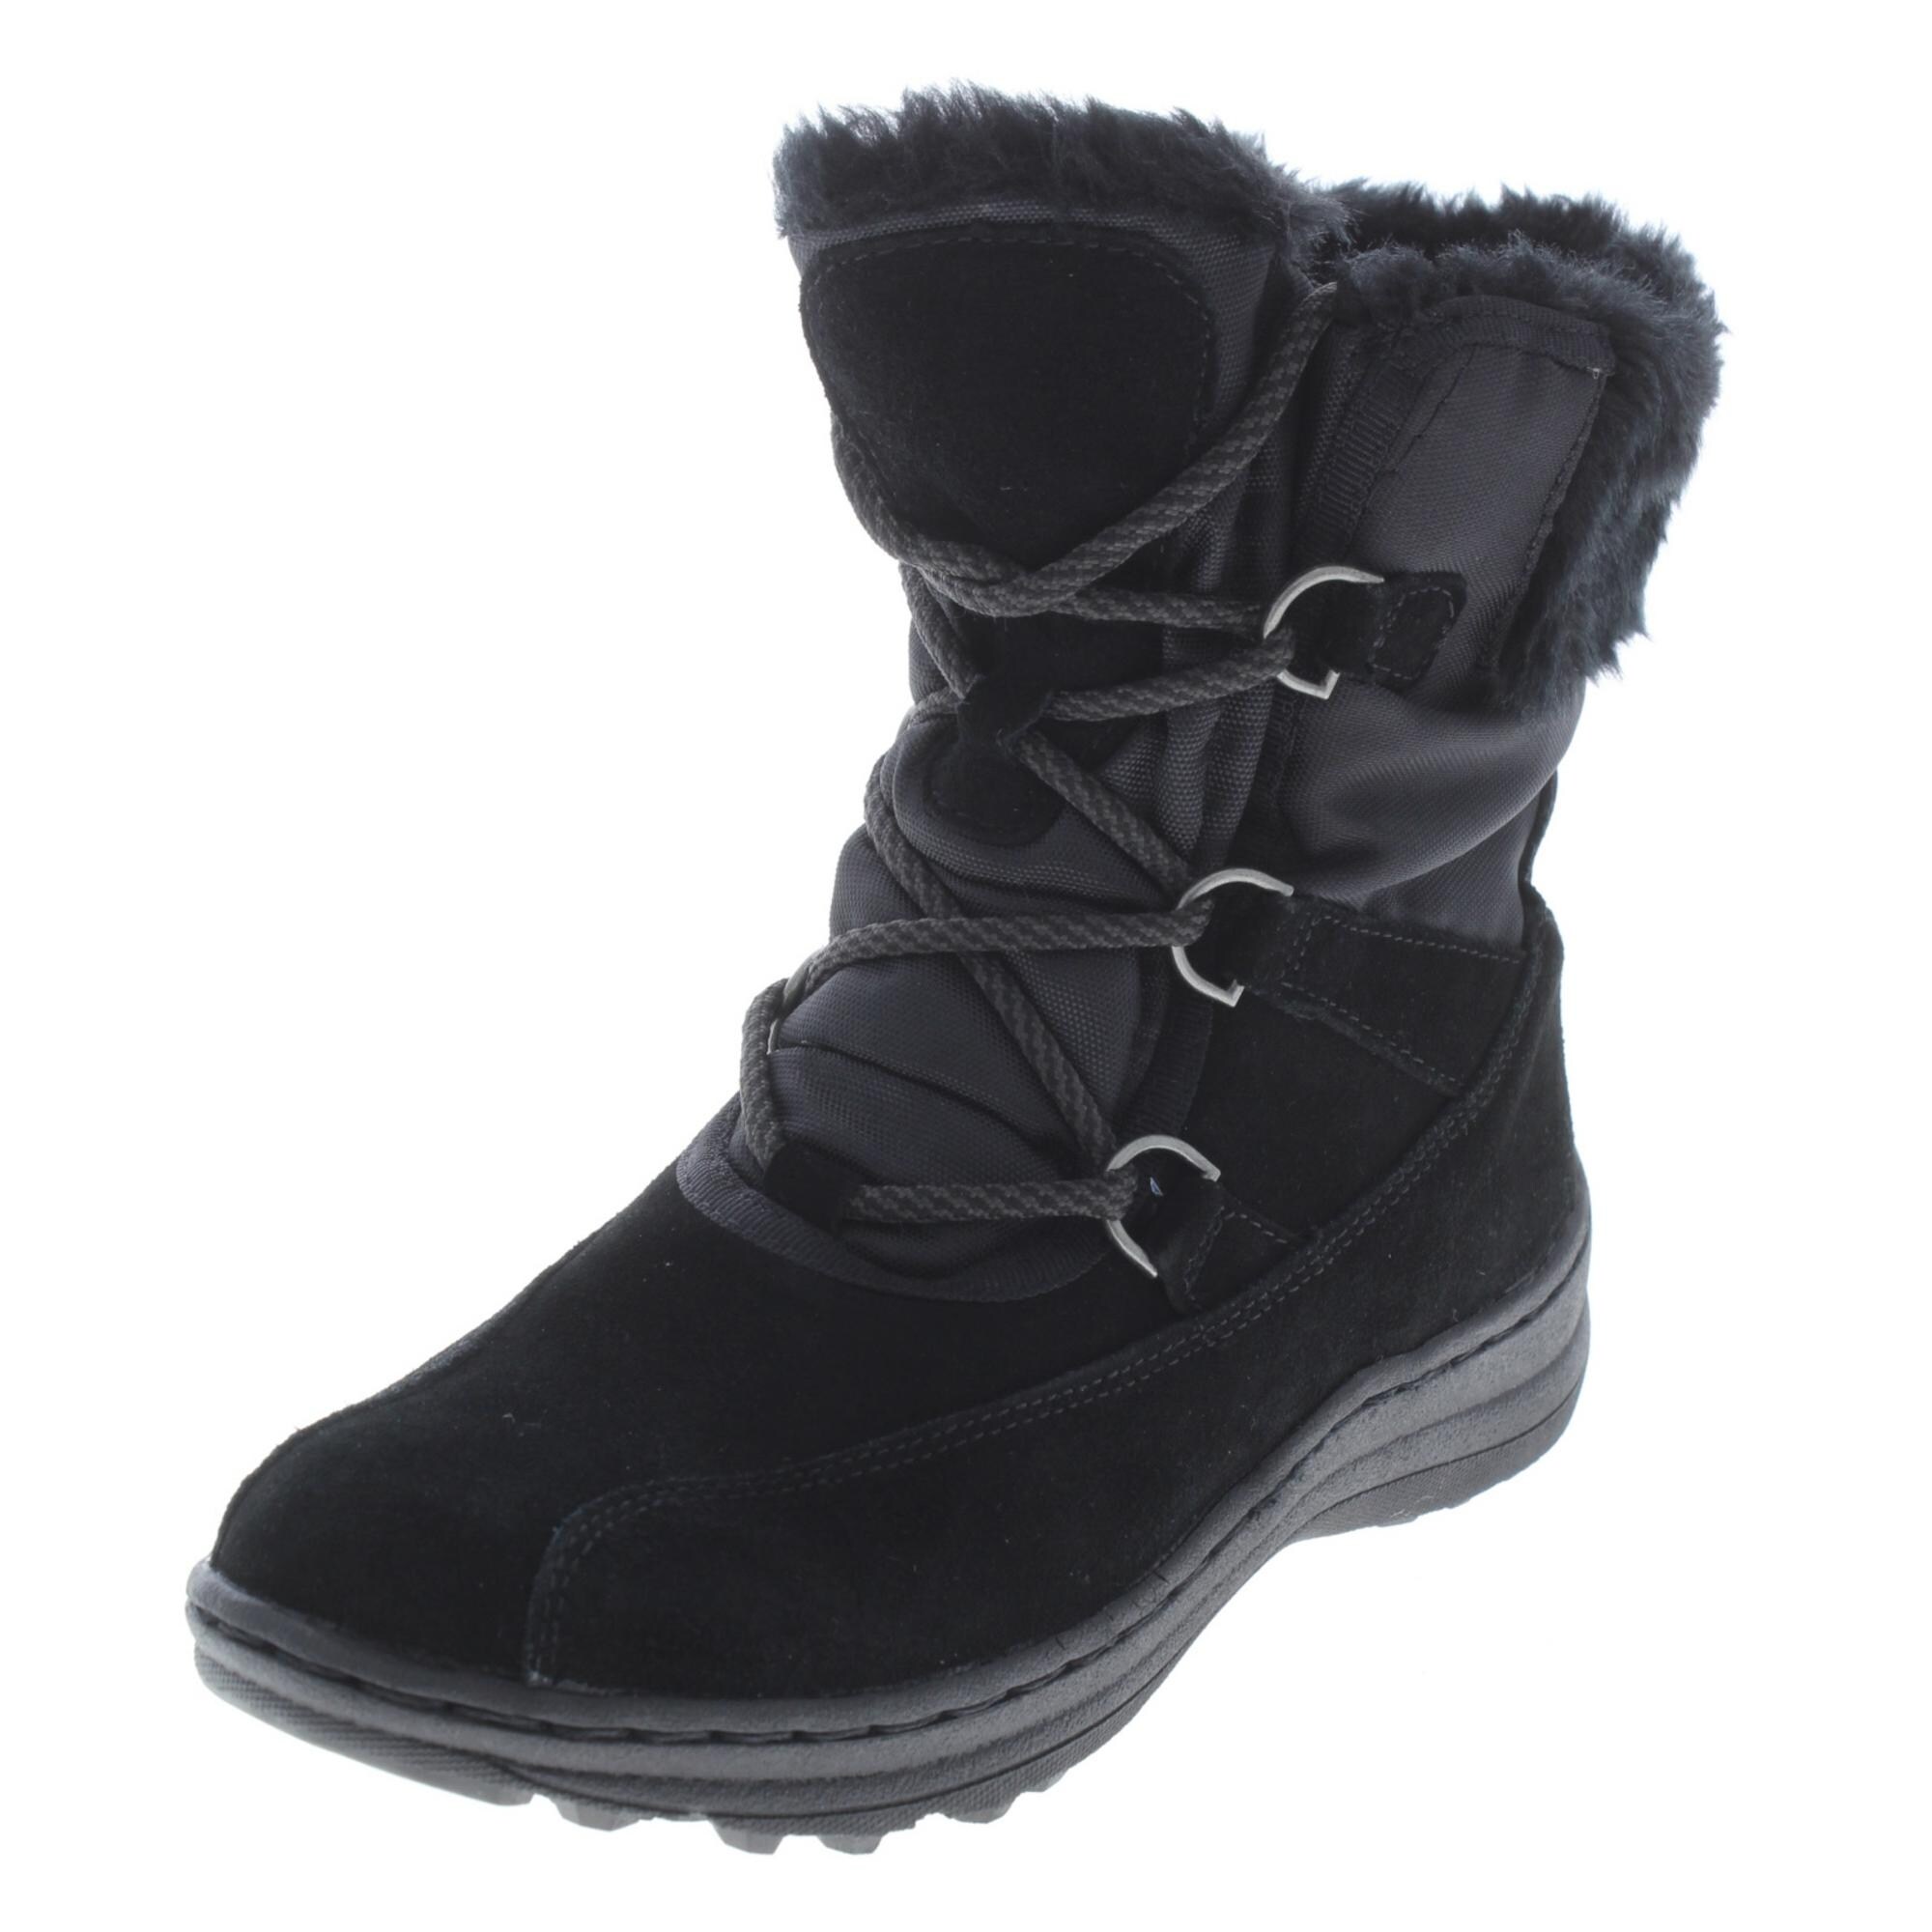 baretraps aero winter boots